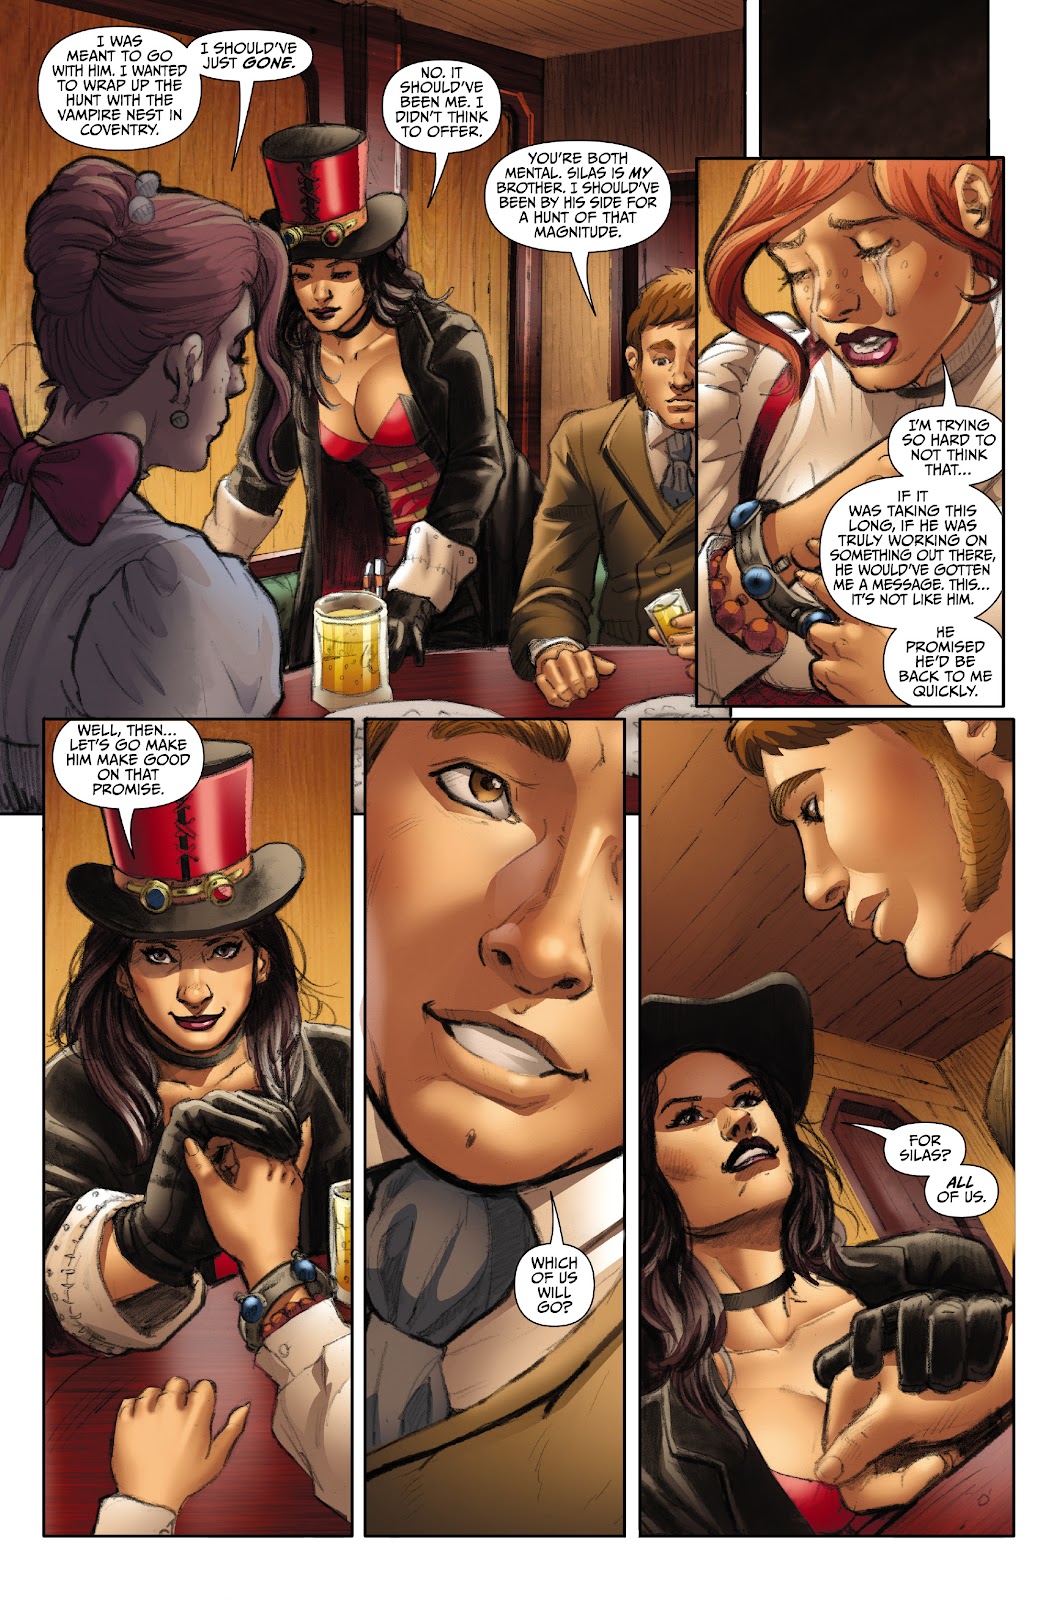 Van Helsing: Vampire Hunter issue 1 - Page 12